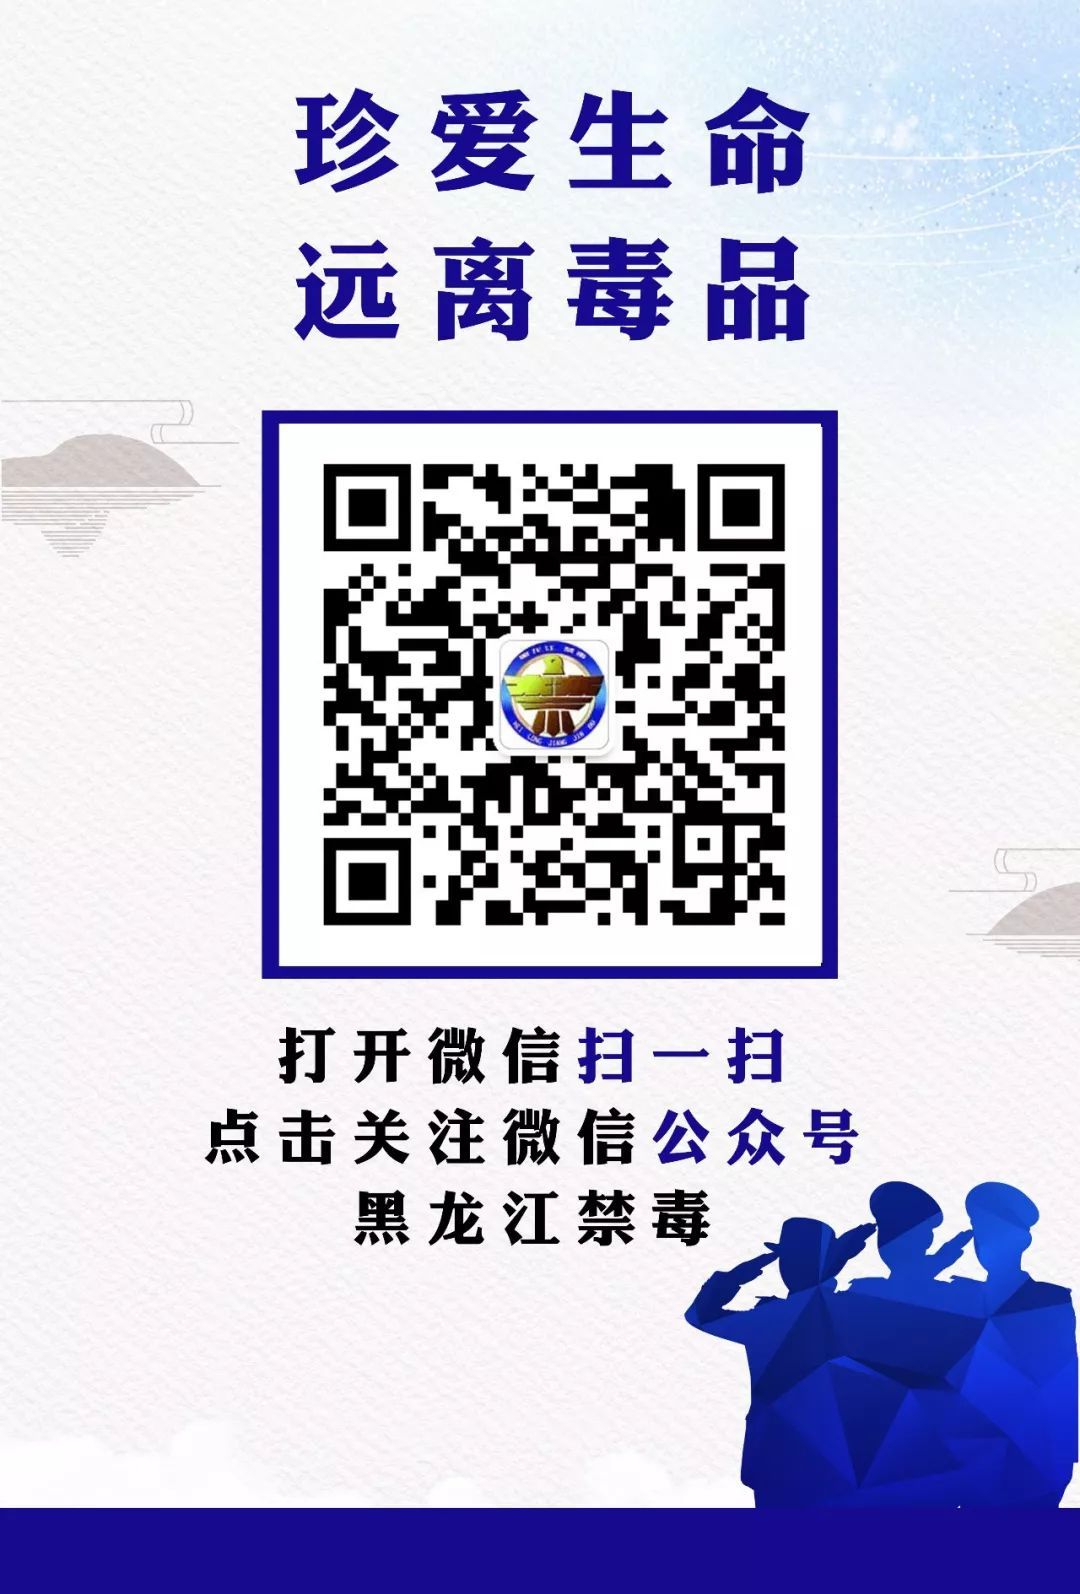 中国禁毒二维码图片